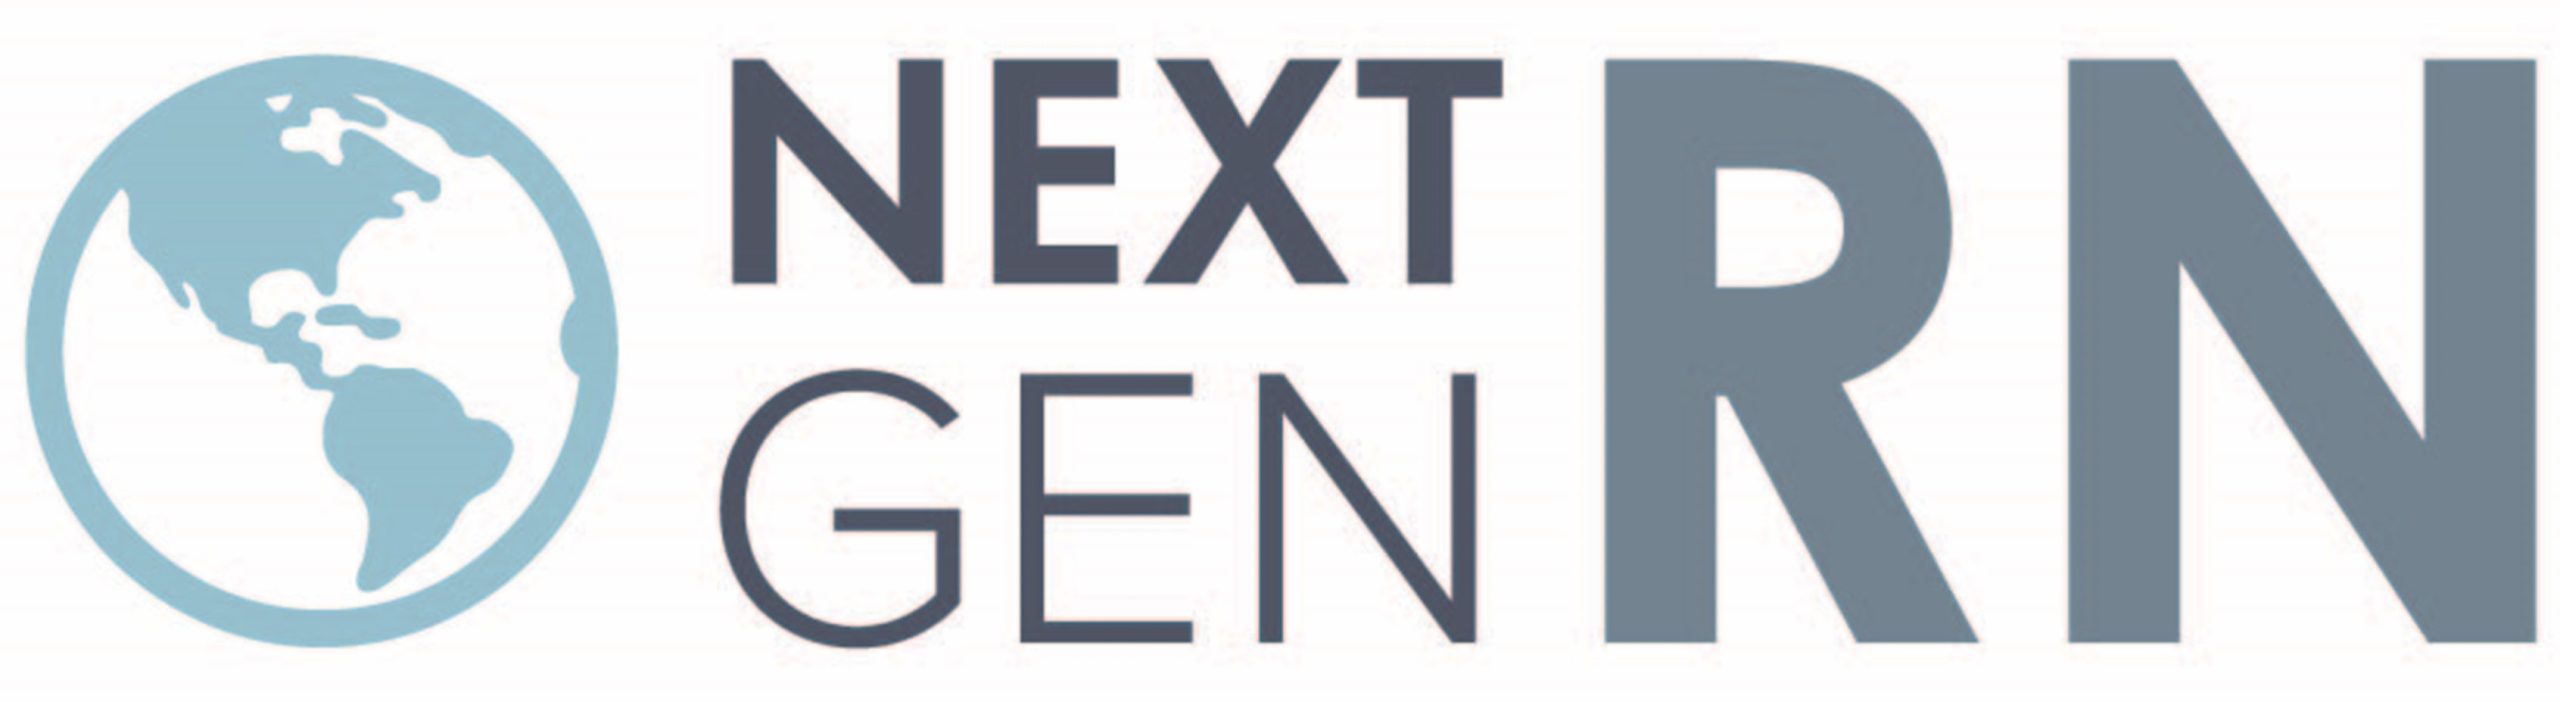 Next Gen RN logo